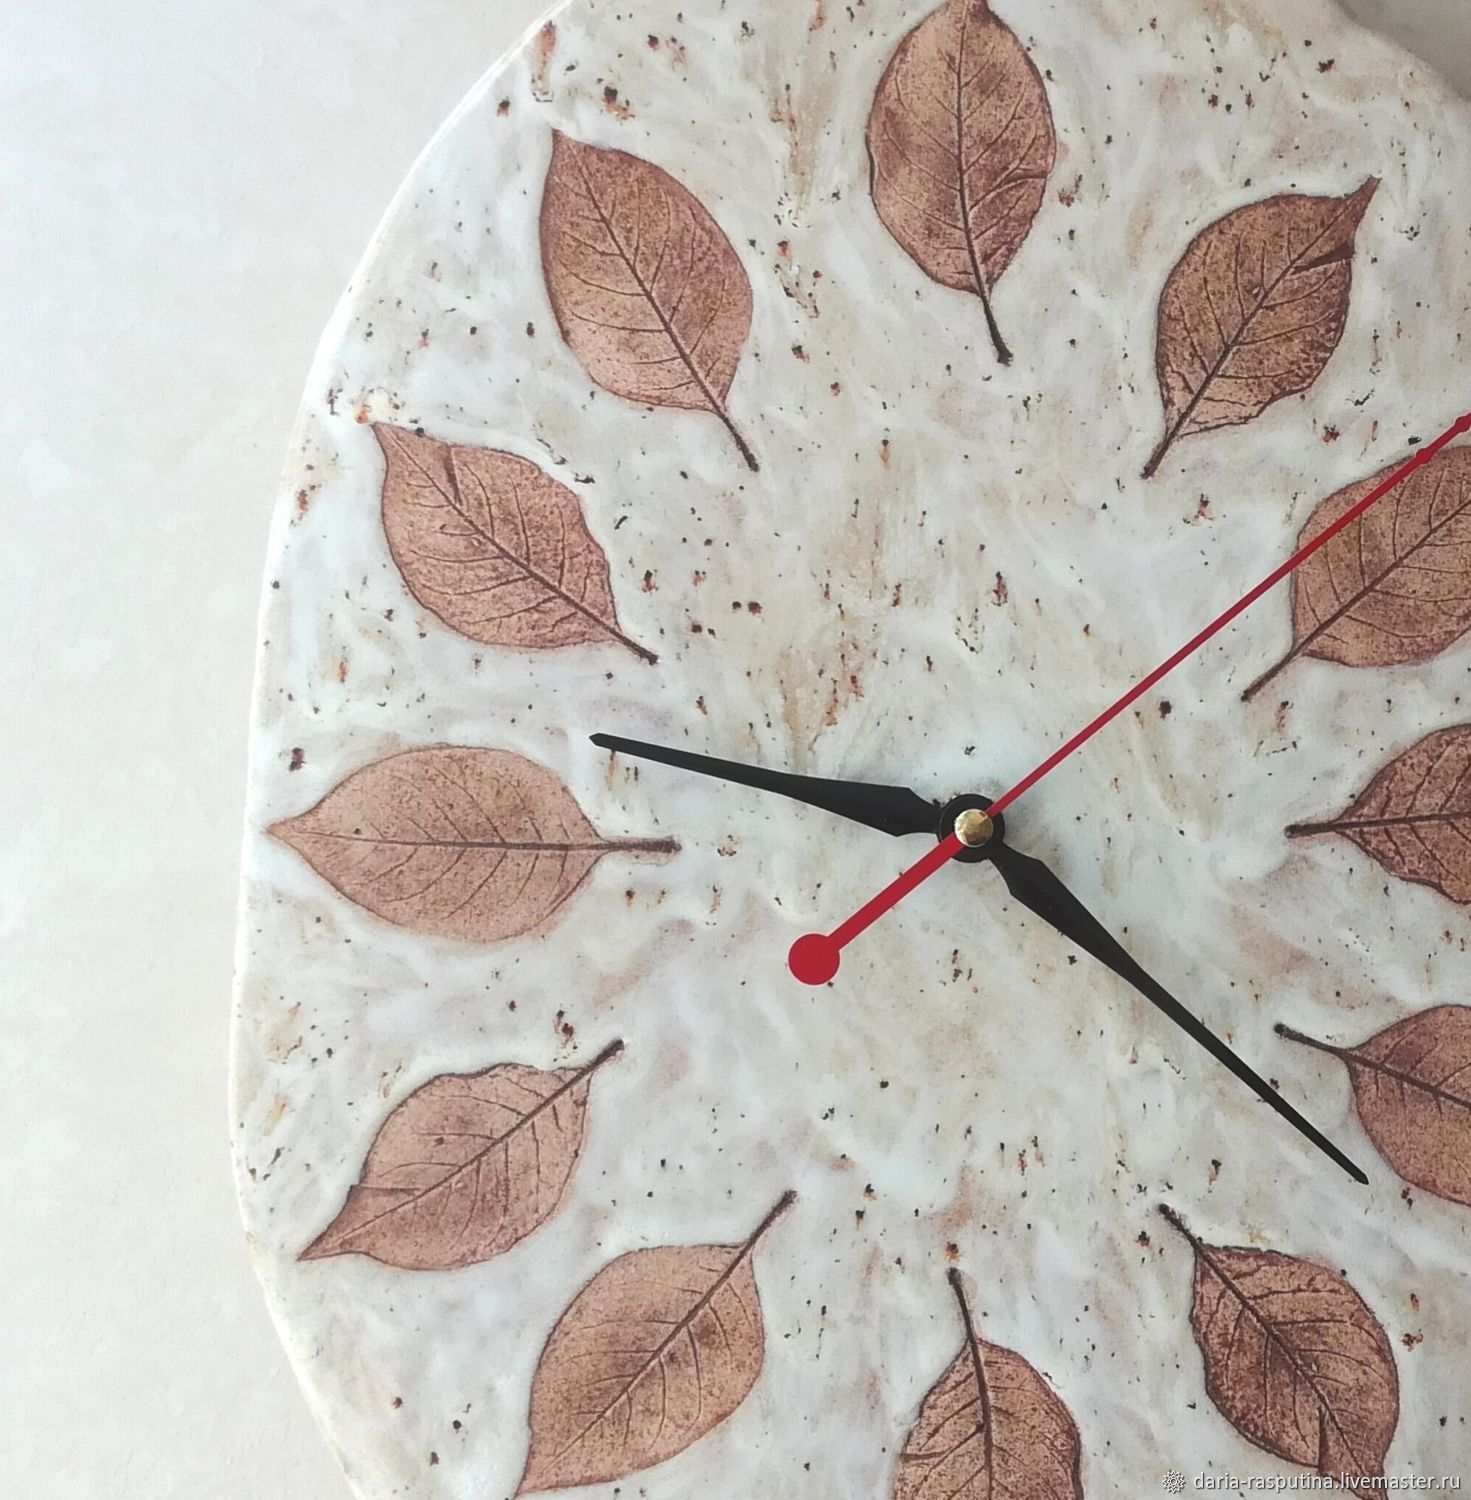 Часы из керамики